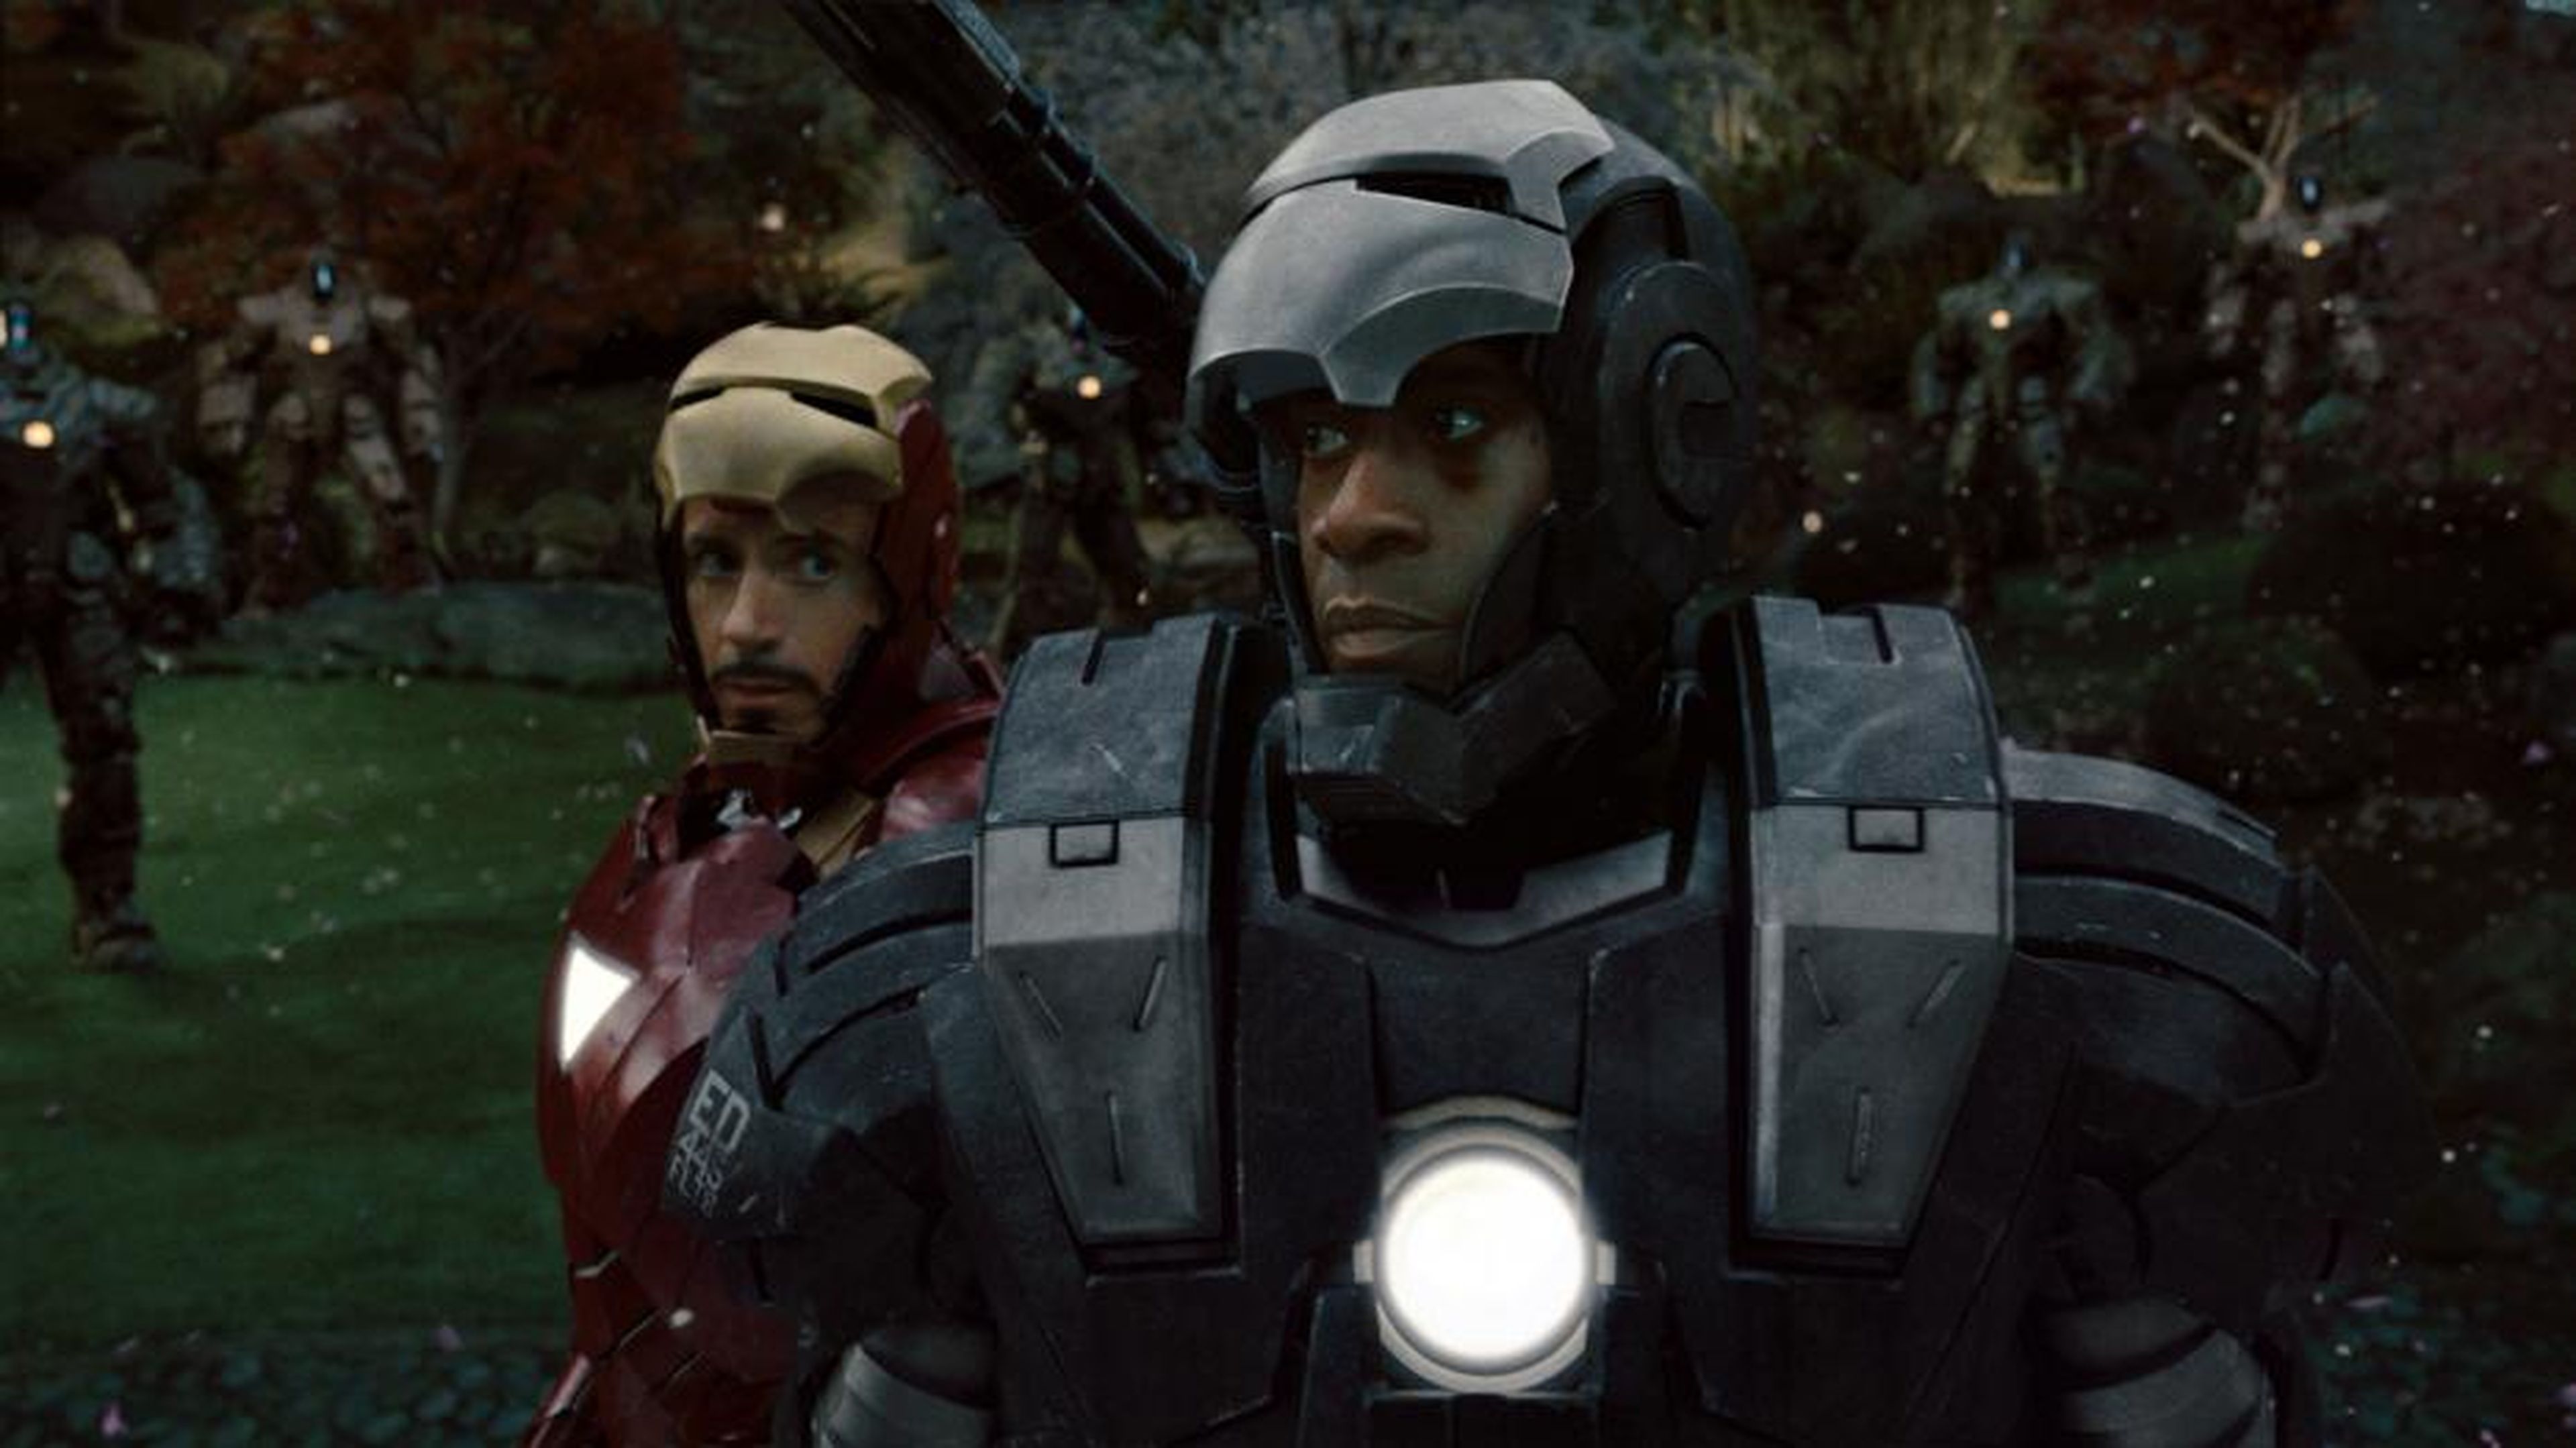 Capitán América Civil War: Quién es quién en Team Iron Man